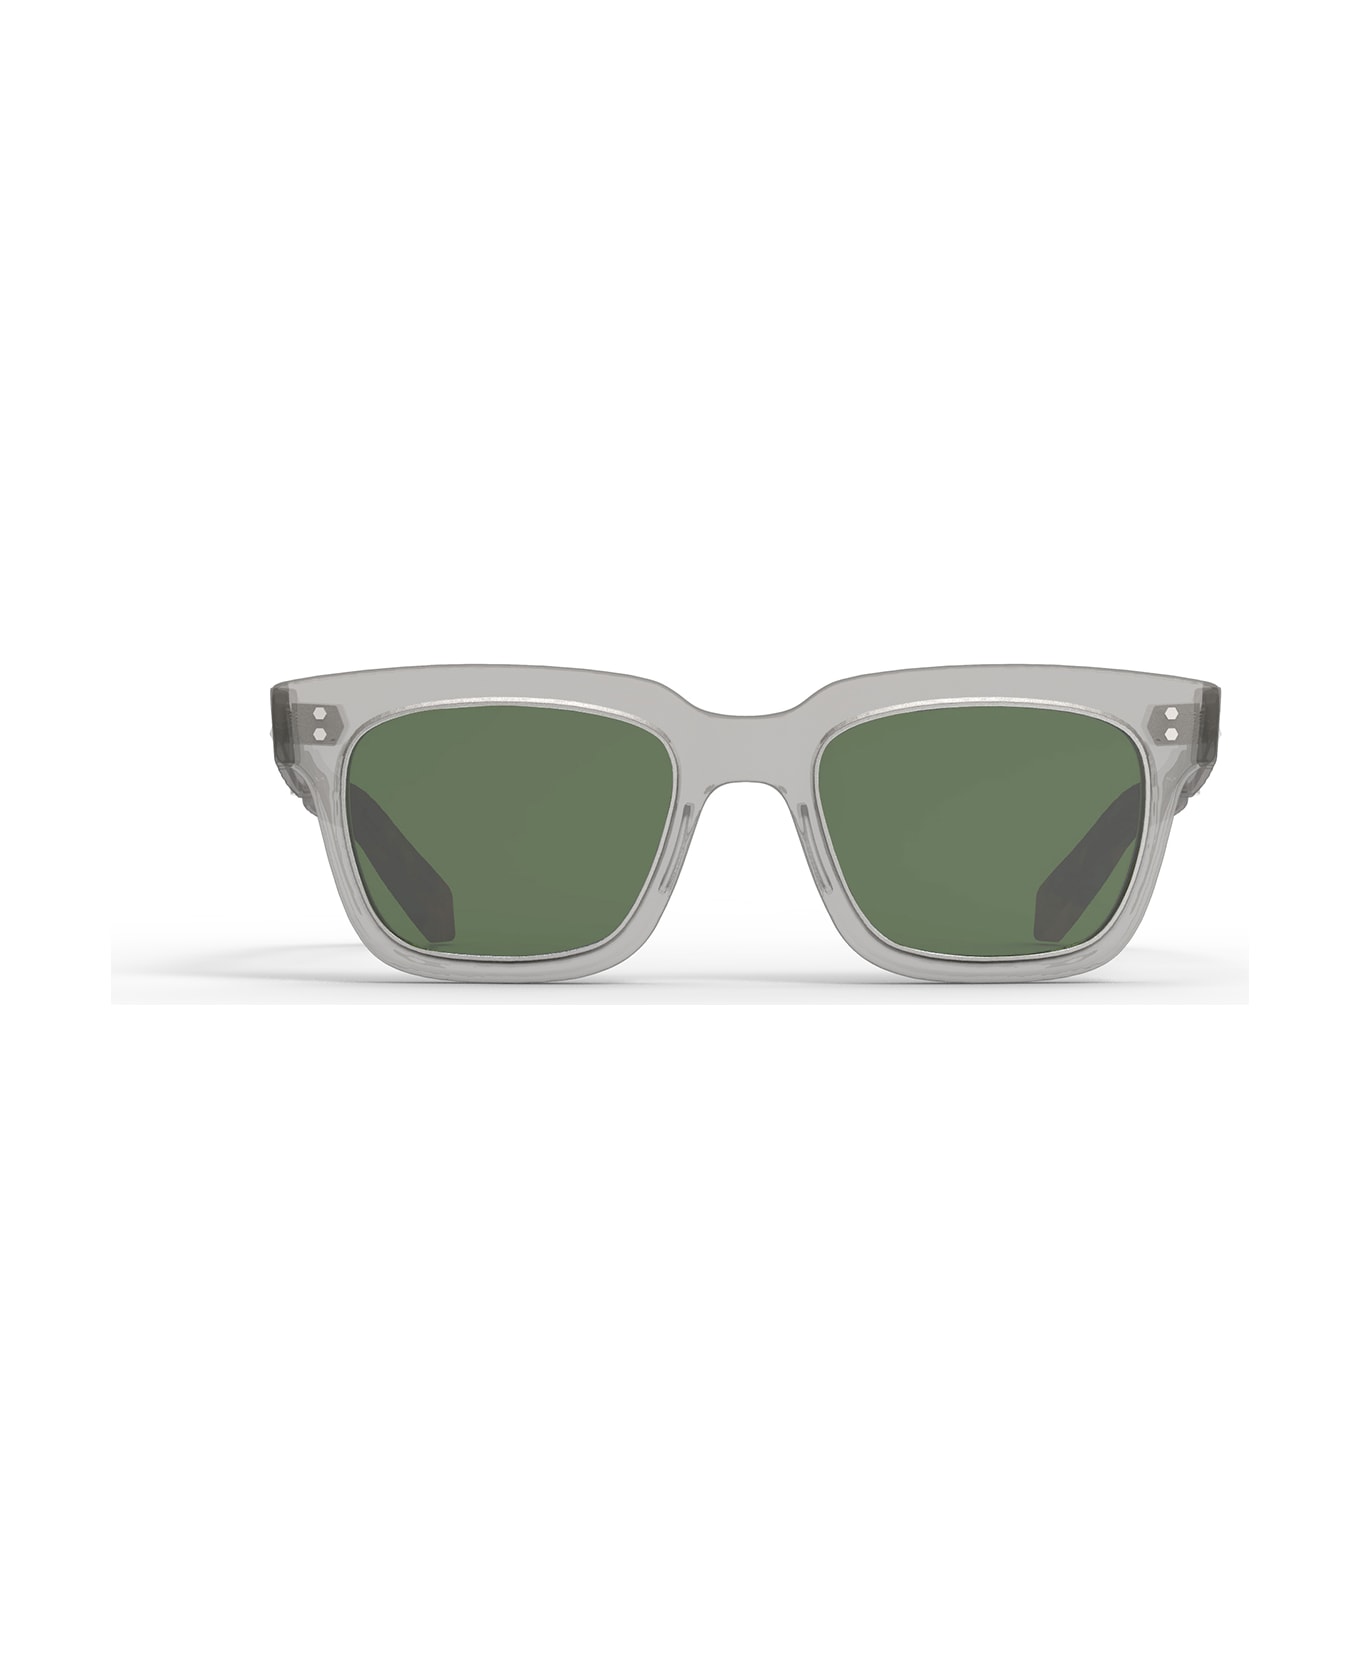 Mr. Leight Arnie S Grey Crystal-matte Platinum Sunglasses - Grey Crystal-Matte Platinum